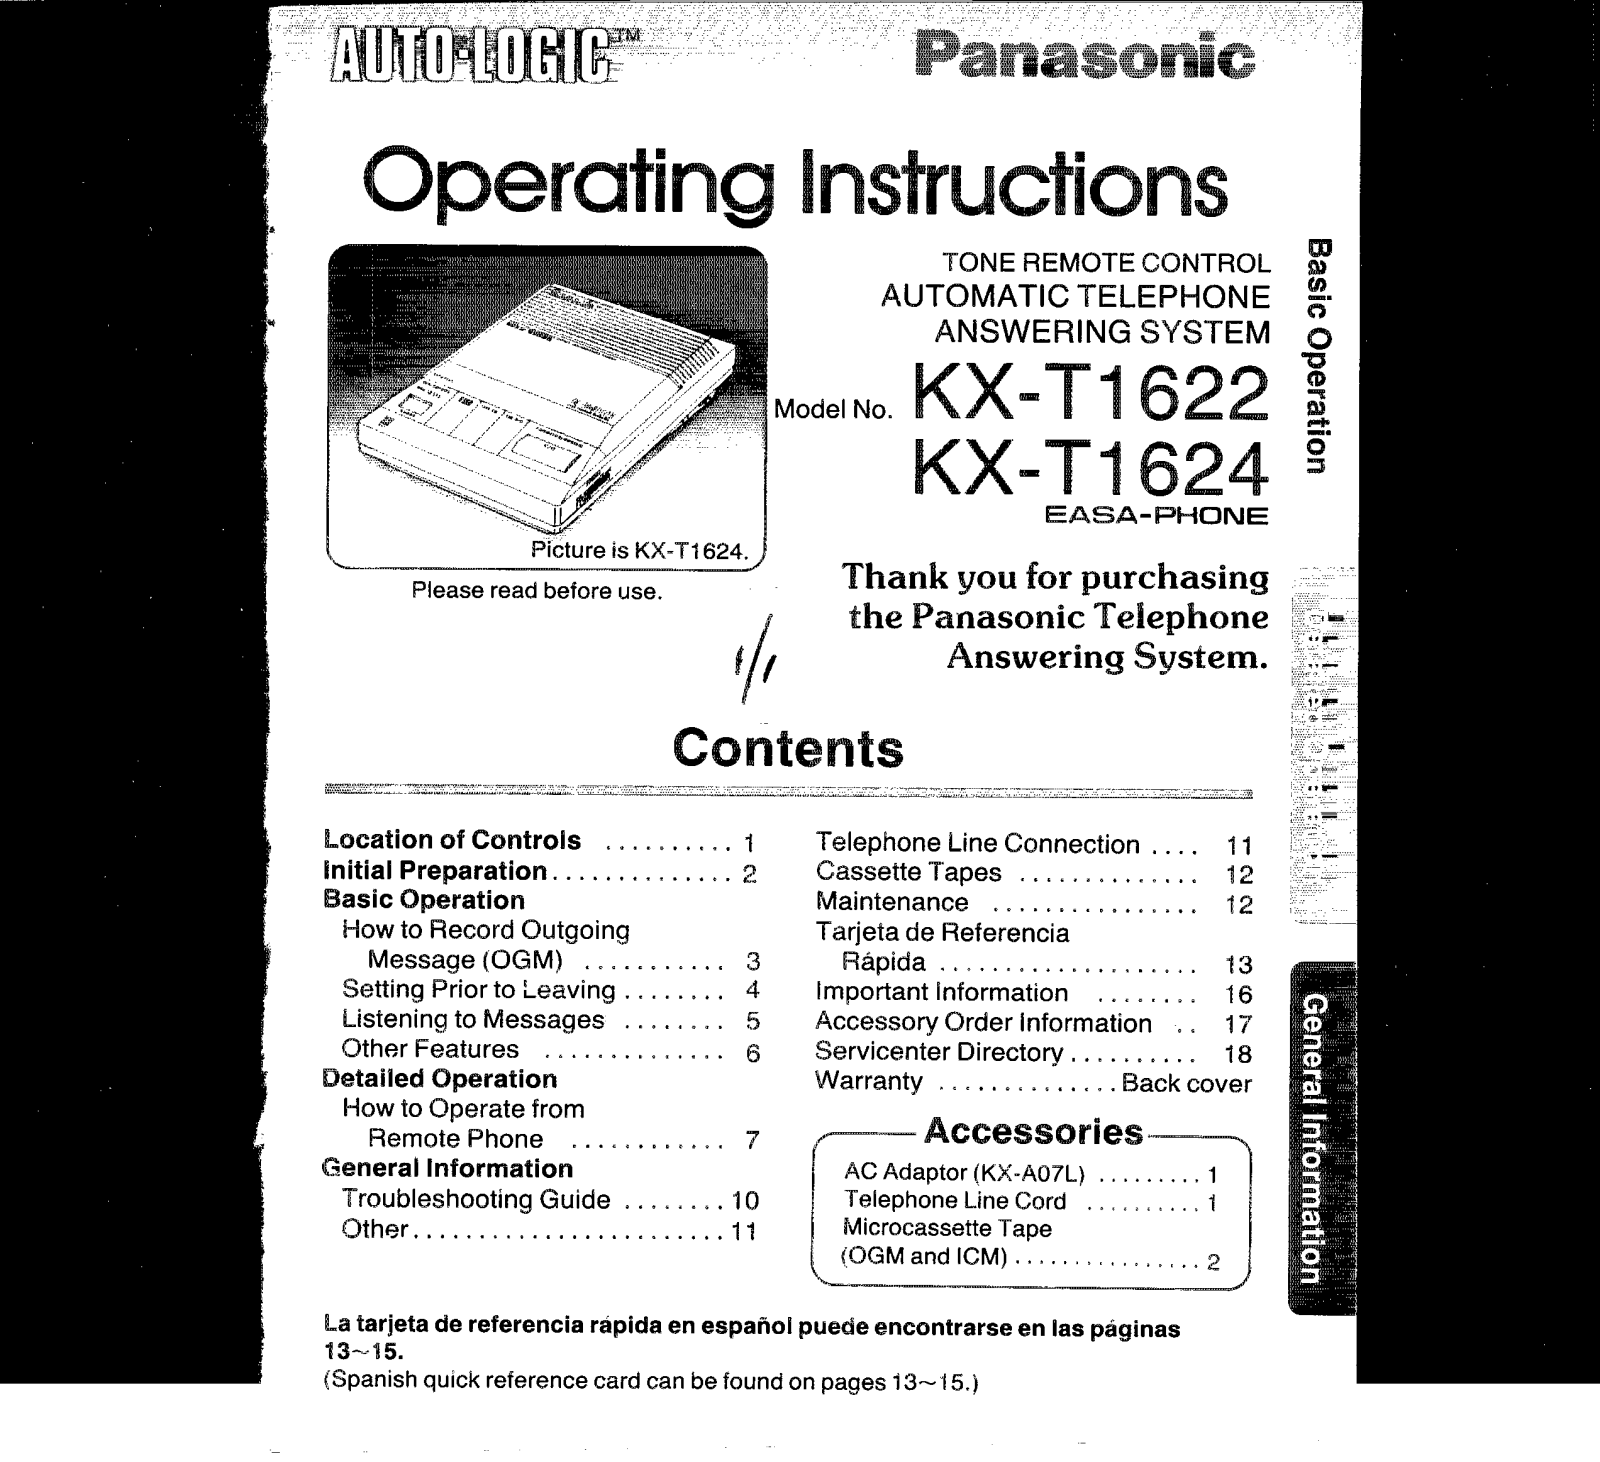 Panasonic kx-t1622 Operation Manual